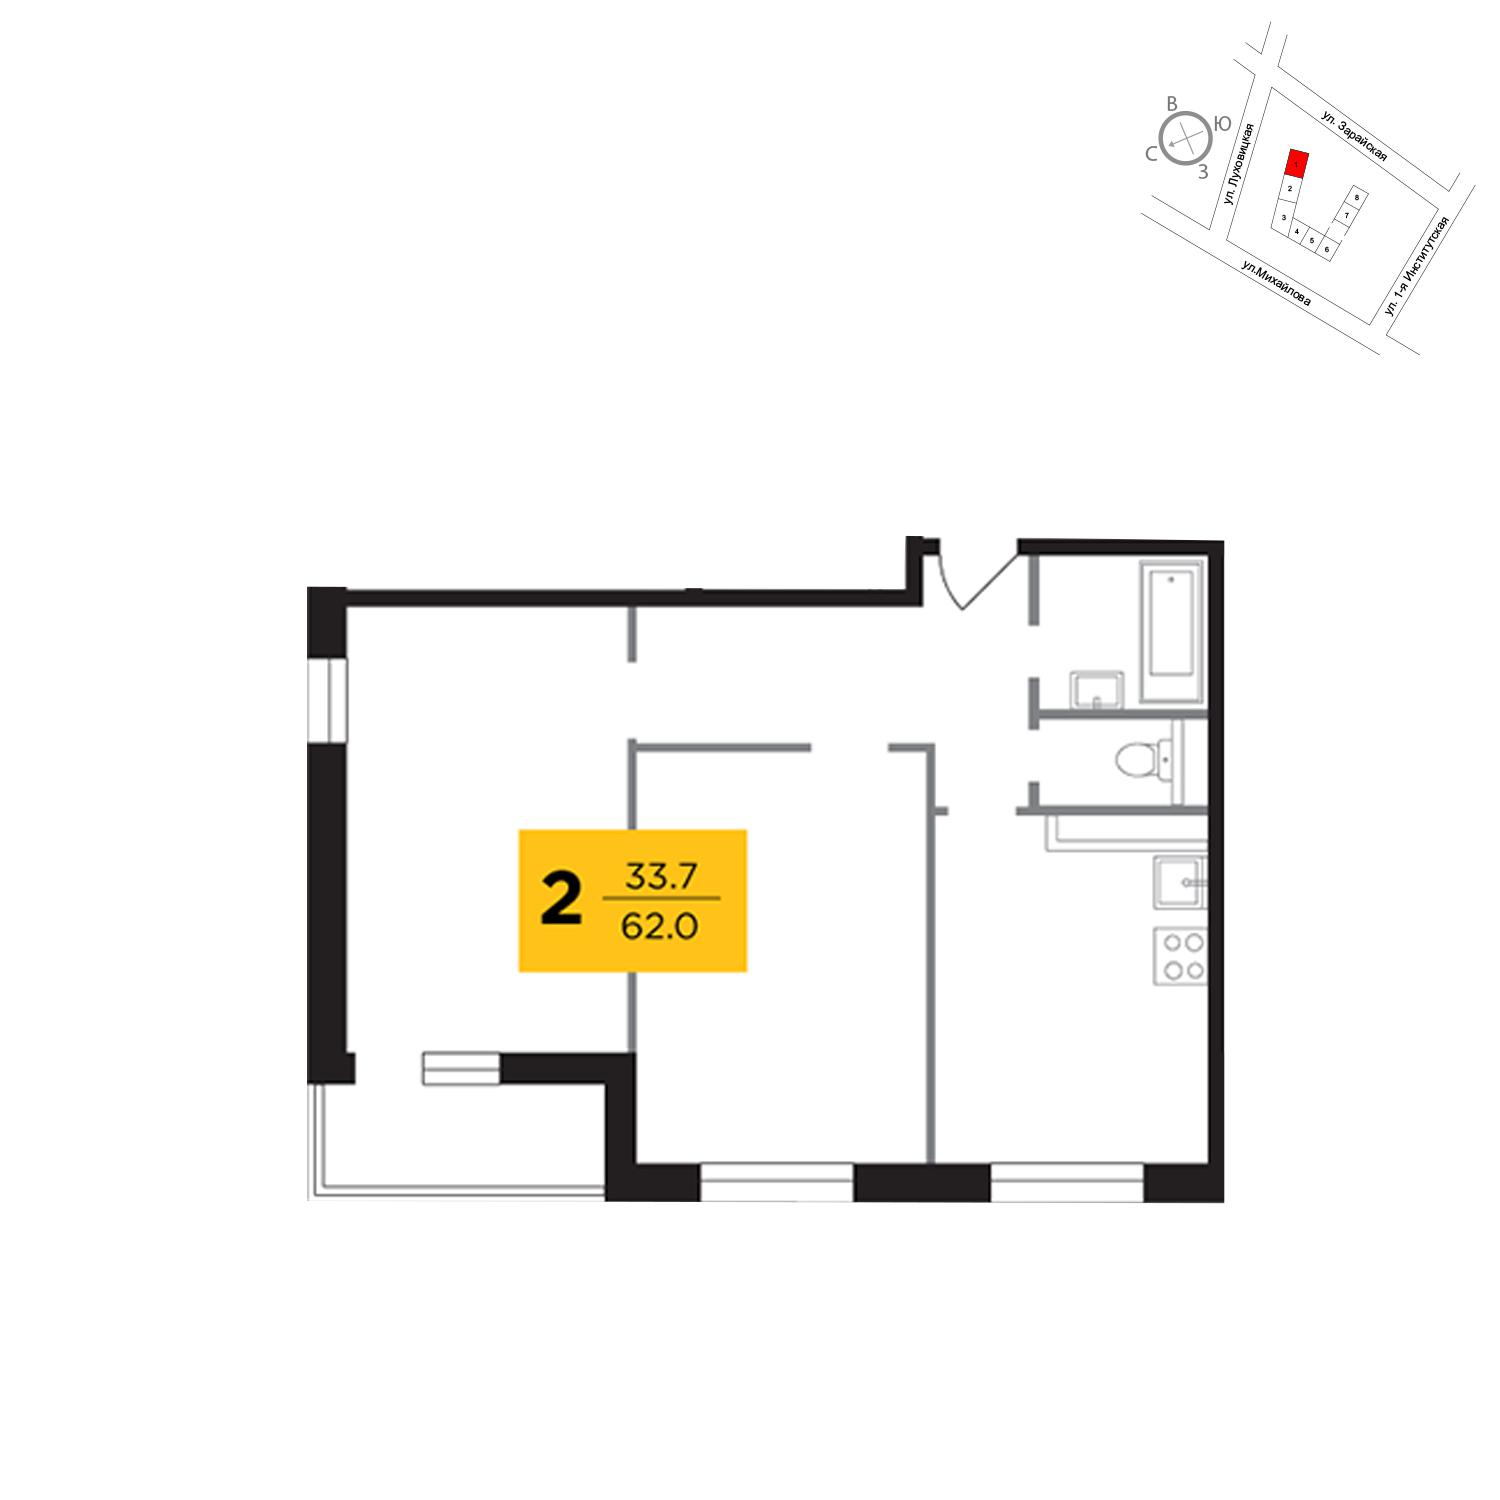 Продаётся 2-комнатная квартира в новостройке 62.0 кв.м. этаж 17/19 за 12 233 700 руб 